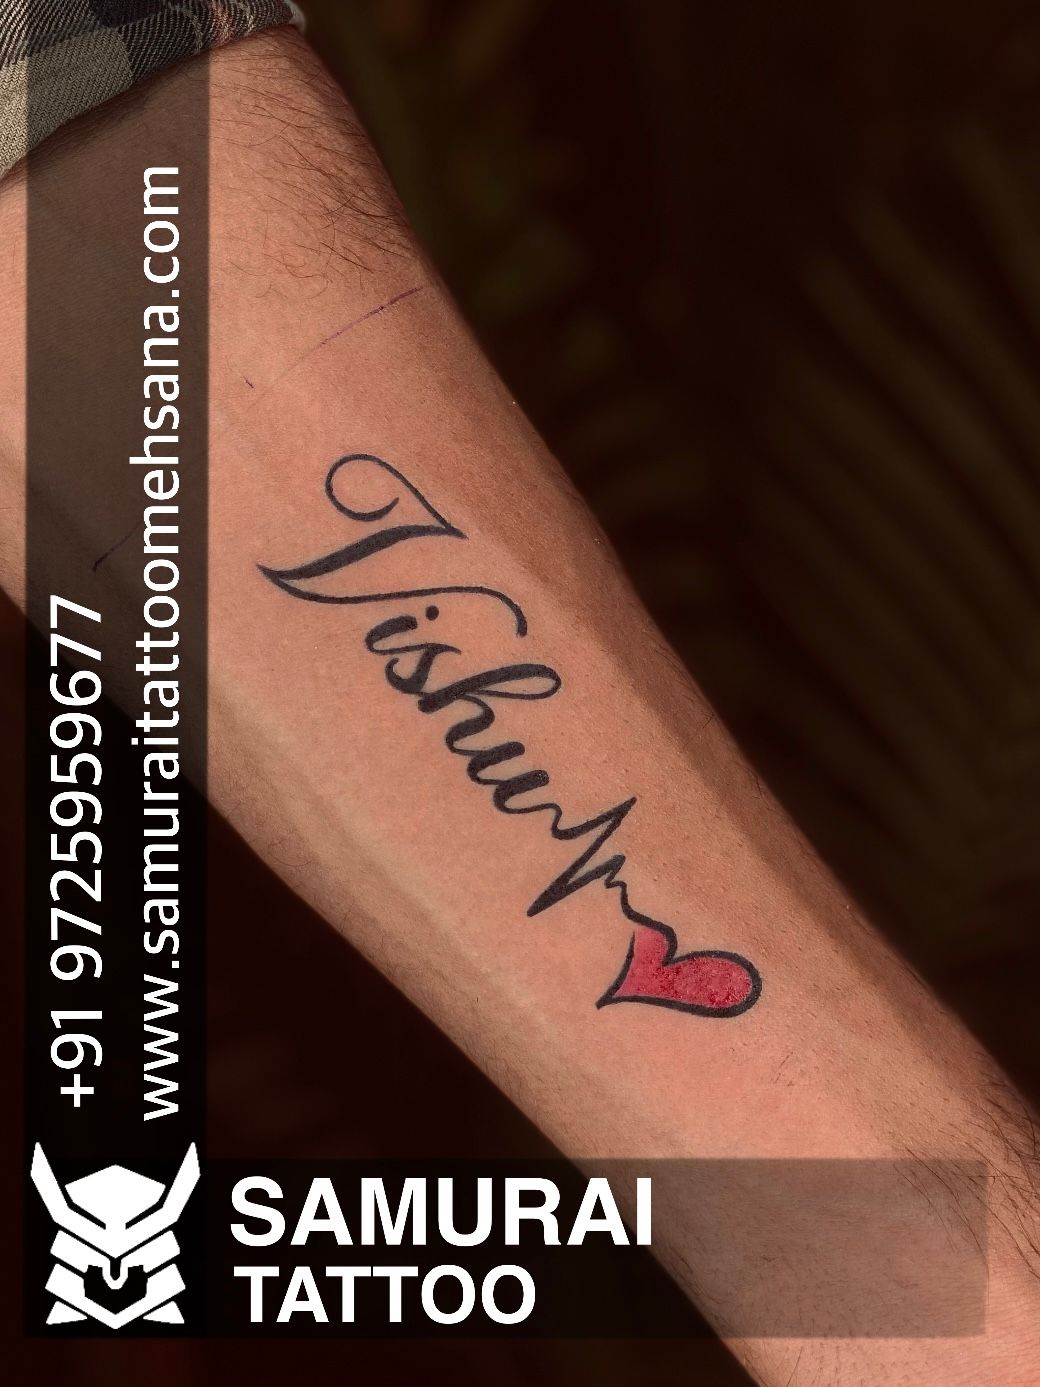 Tarun's Tattoo on Instagram: 